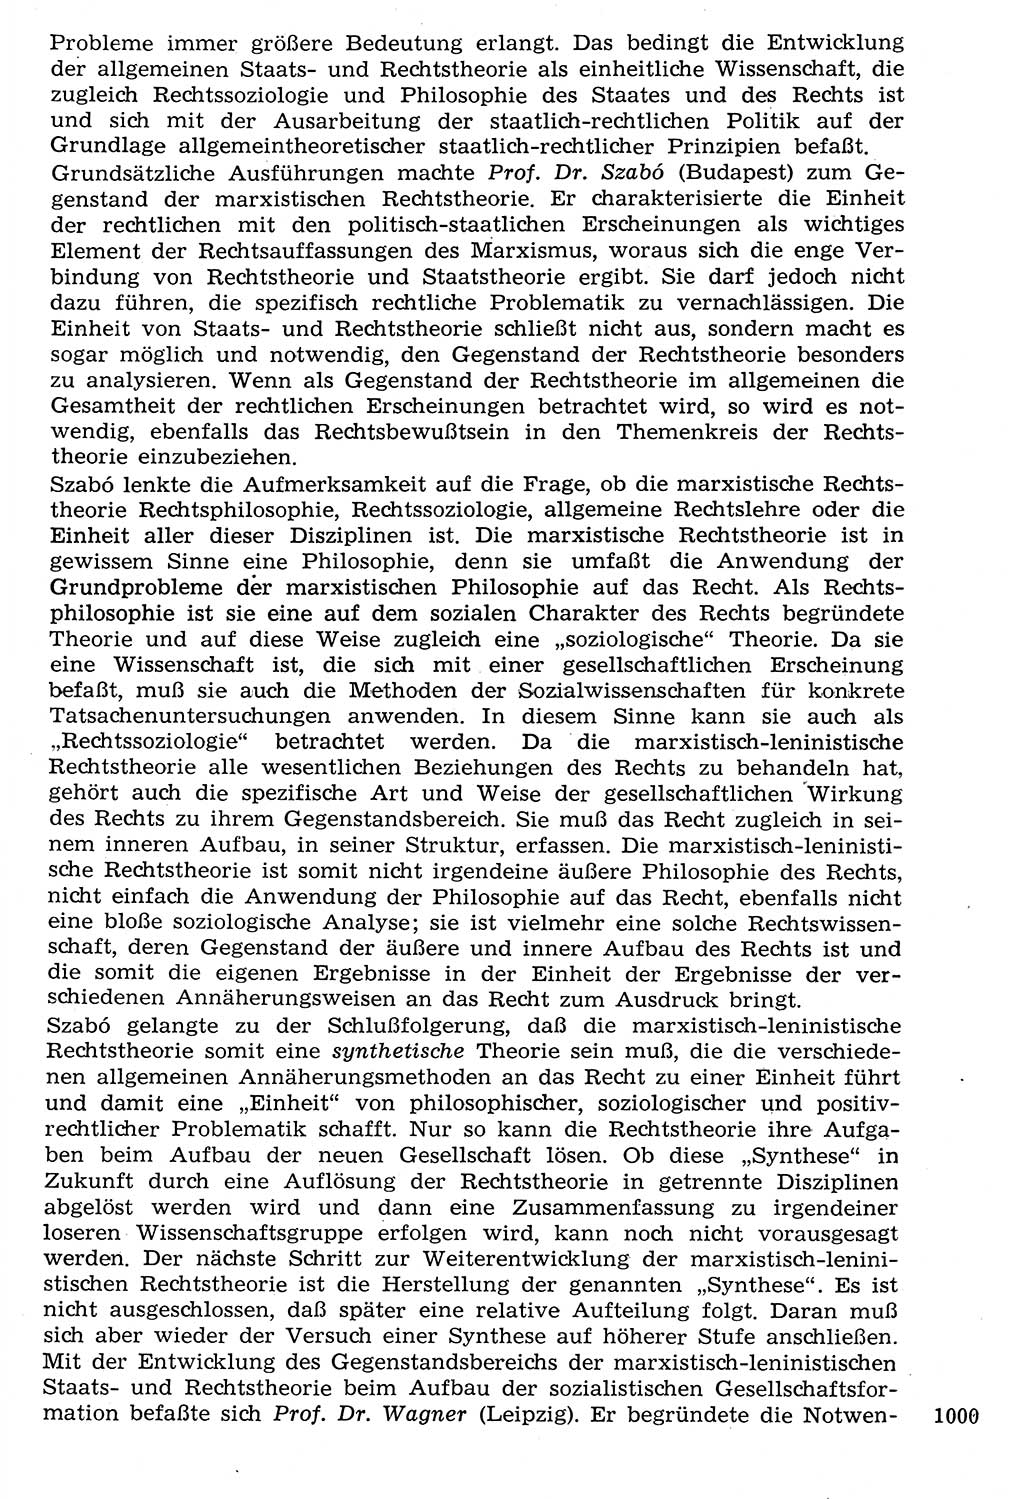 Staat und Recht (StuR), 17. Jahrgang [Deutsche Demokratische Republik (DDR)] 1968, Seite 1000 (StuR DDR 1968, S. 1000)